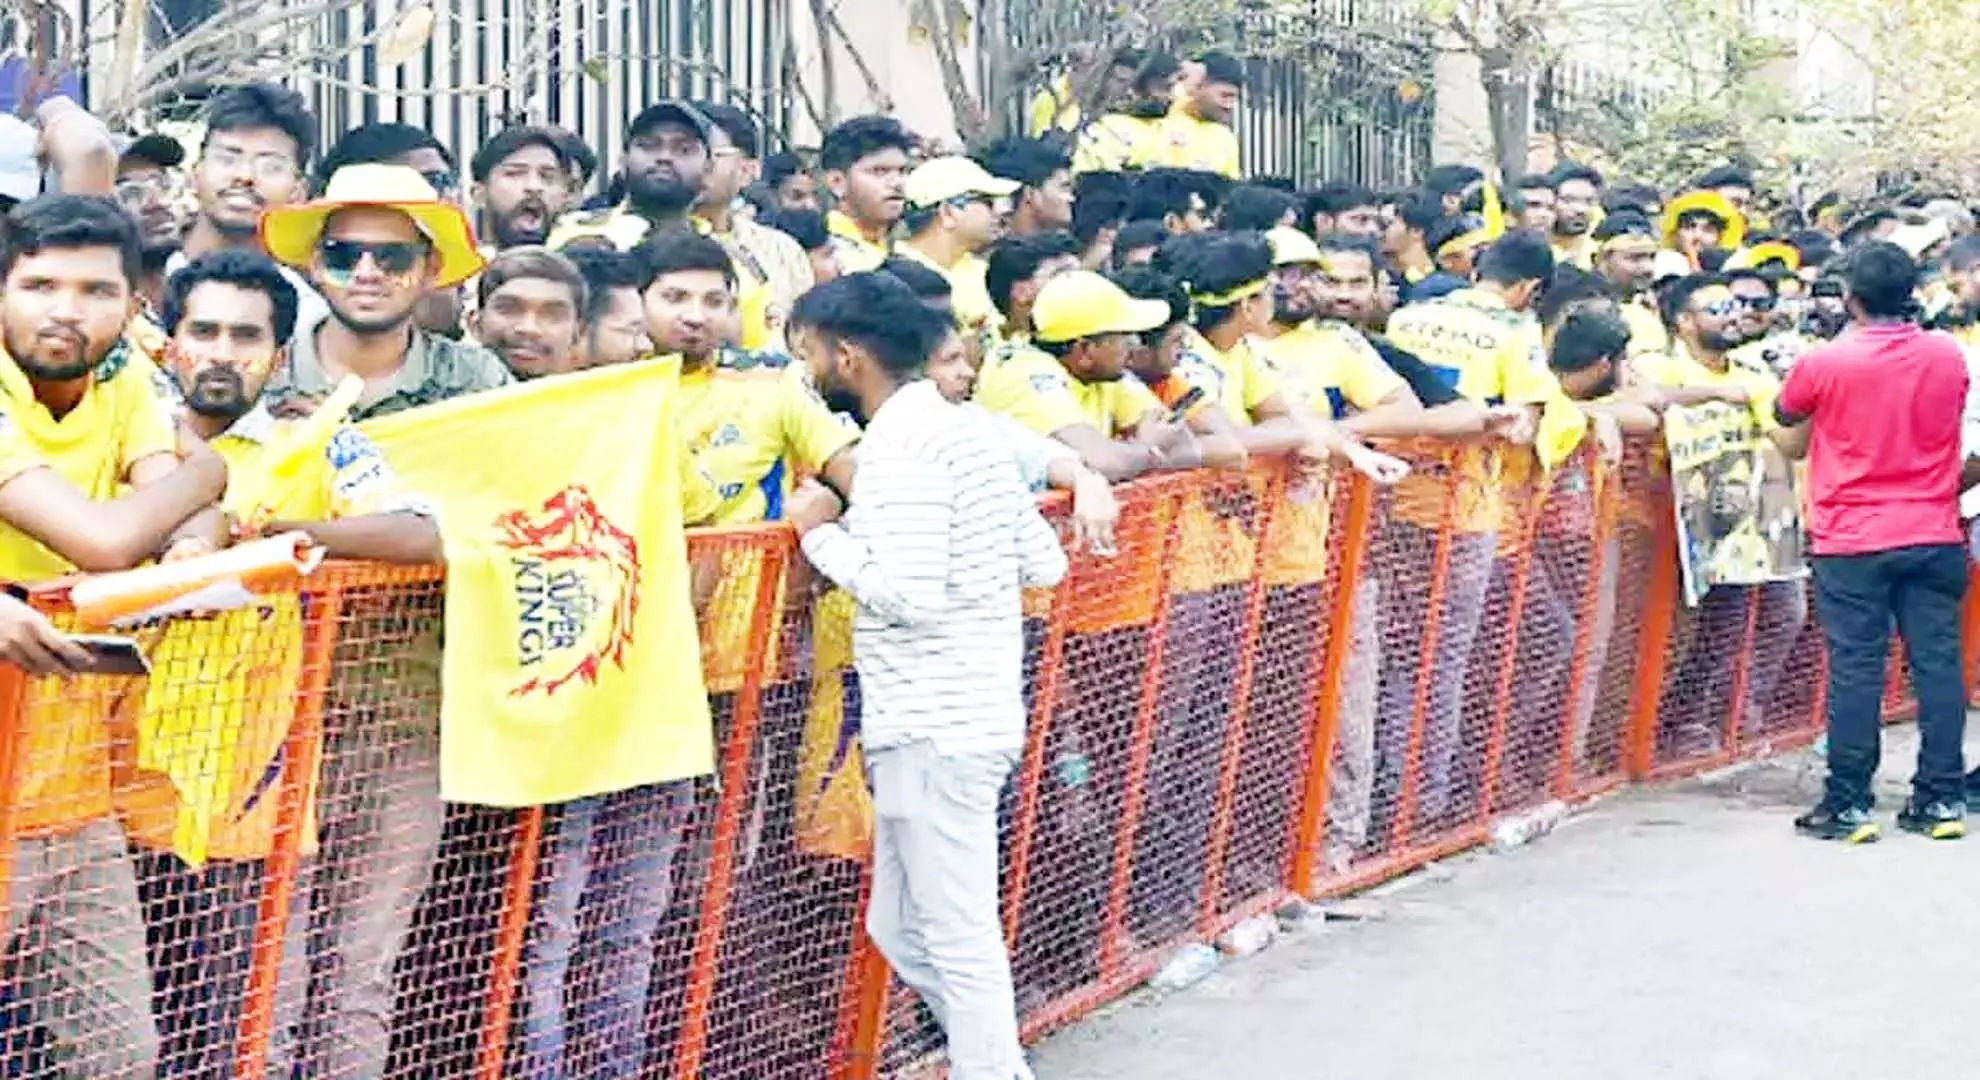 हैदराबाद: उप्पल स्टेडियम के बाहर दर्शकों ने बैरिकेड तोड़ दिए